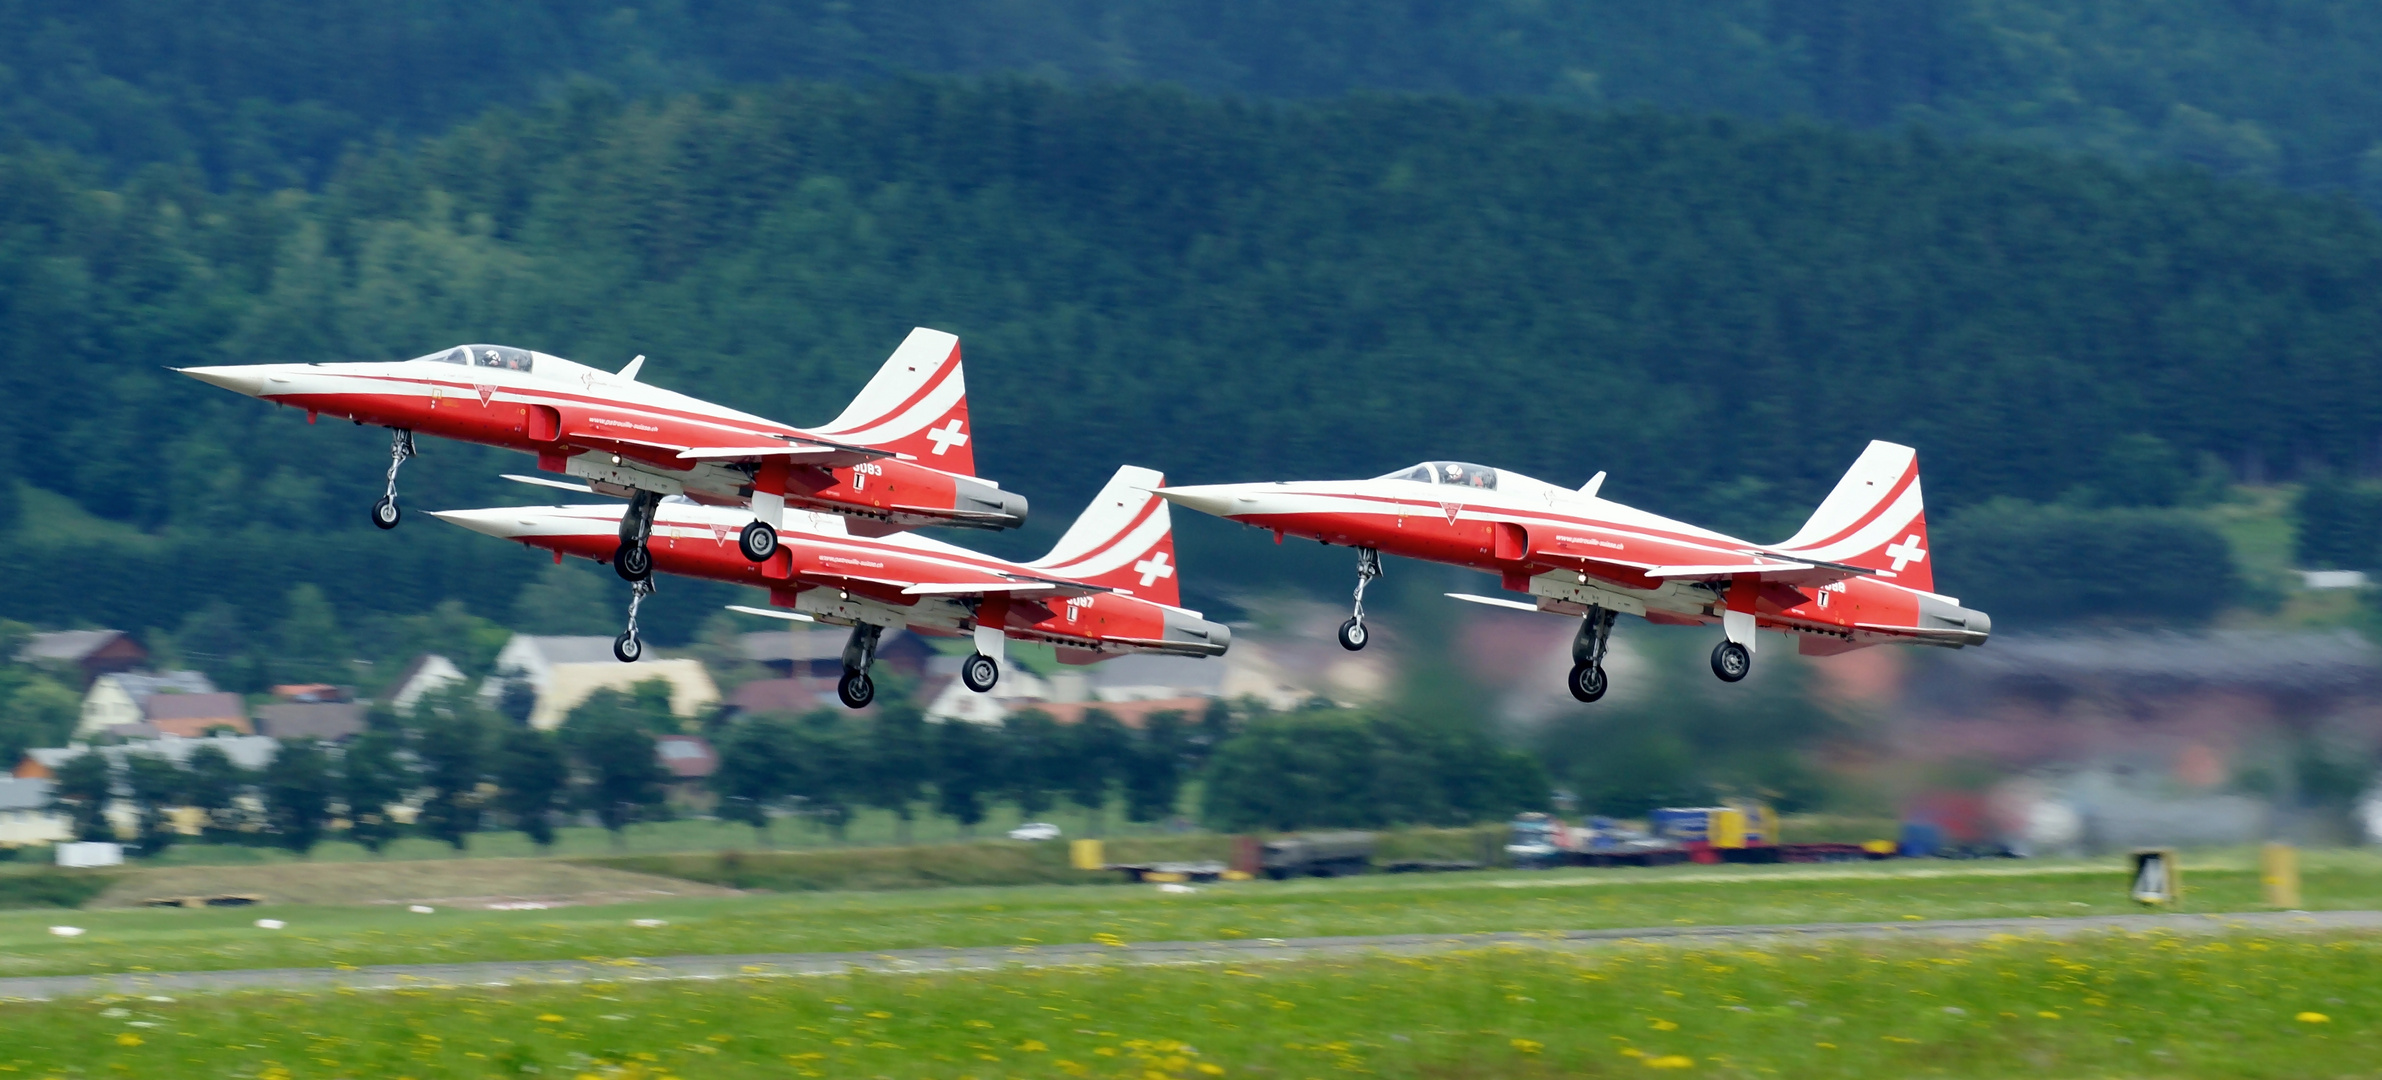 Airpower 2013 - Zeltweg/Austria - 29.06.2013 (6)